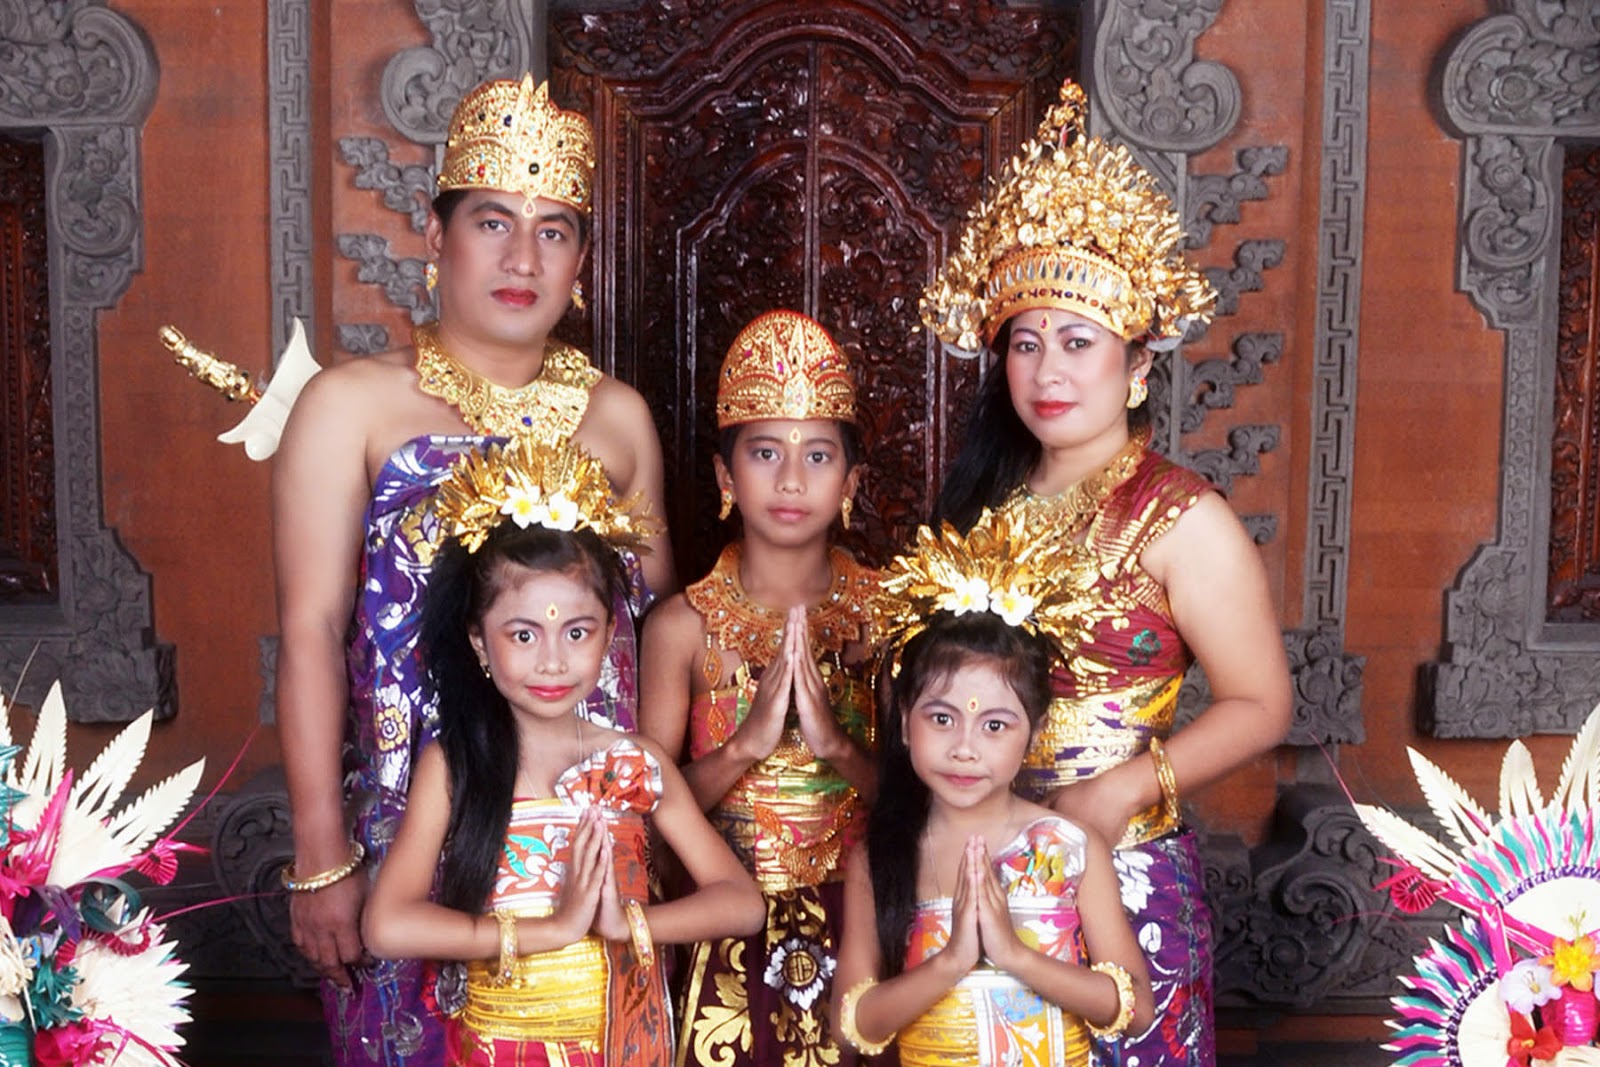 Mengenal Jenis Baju Adat Bali yang Wajib Kamu Ketahui - Budayanesia